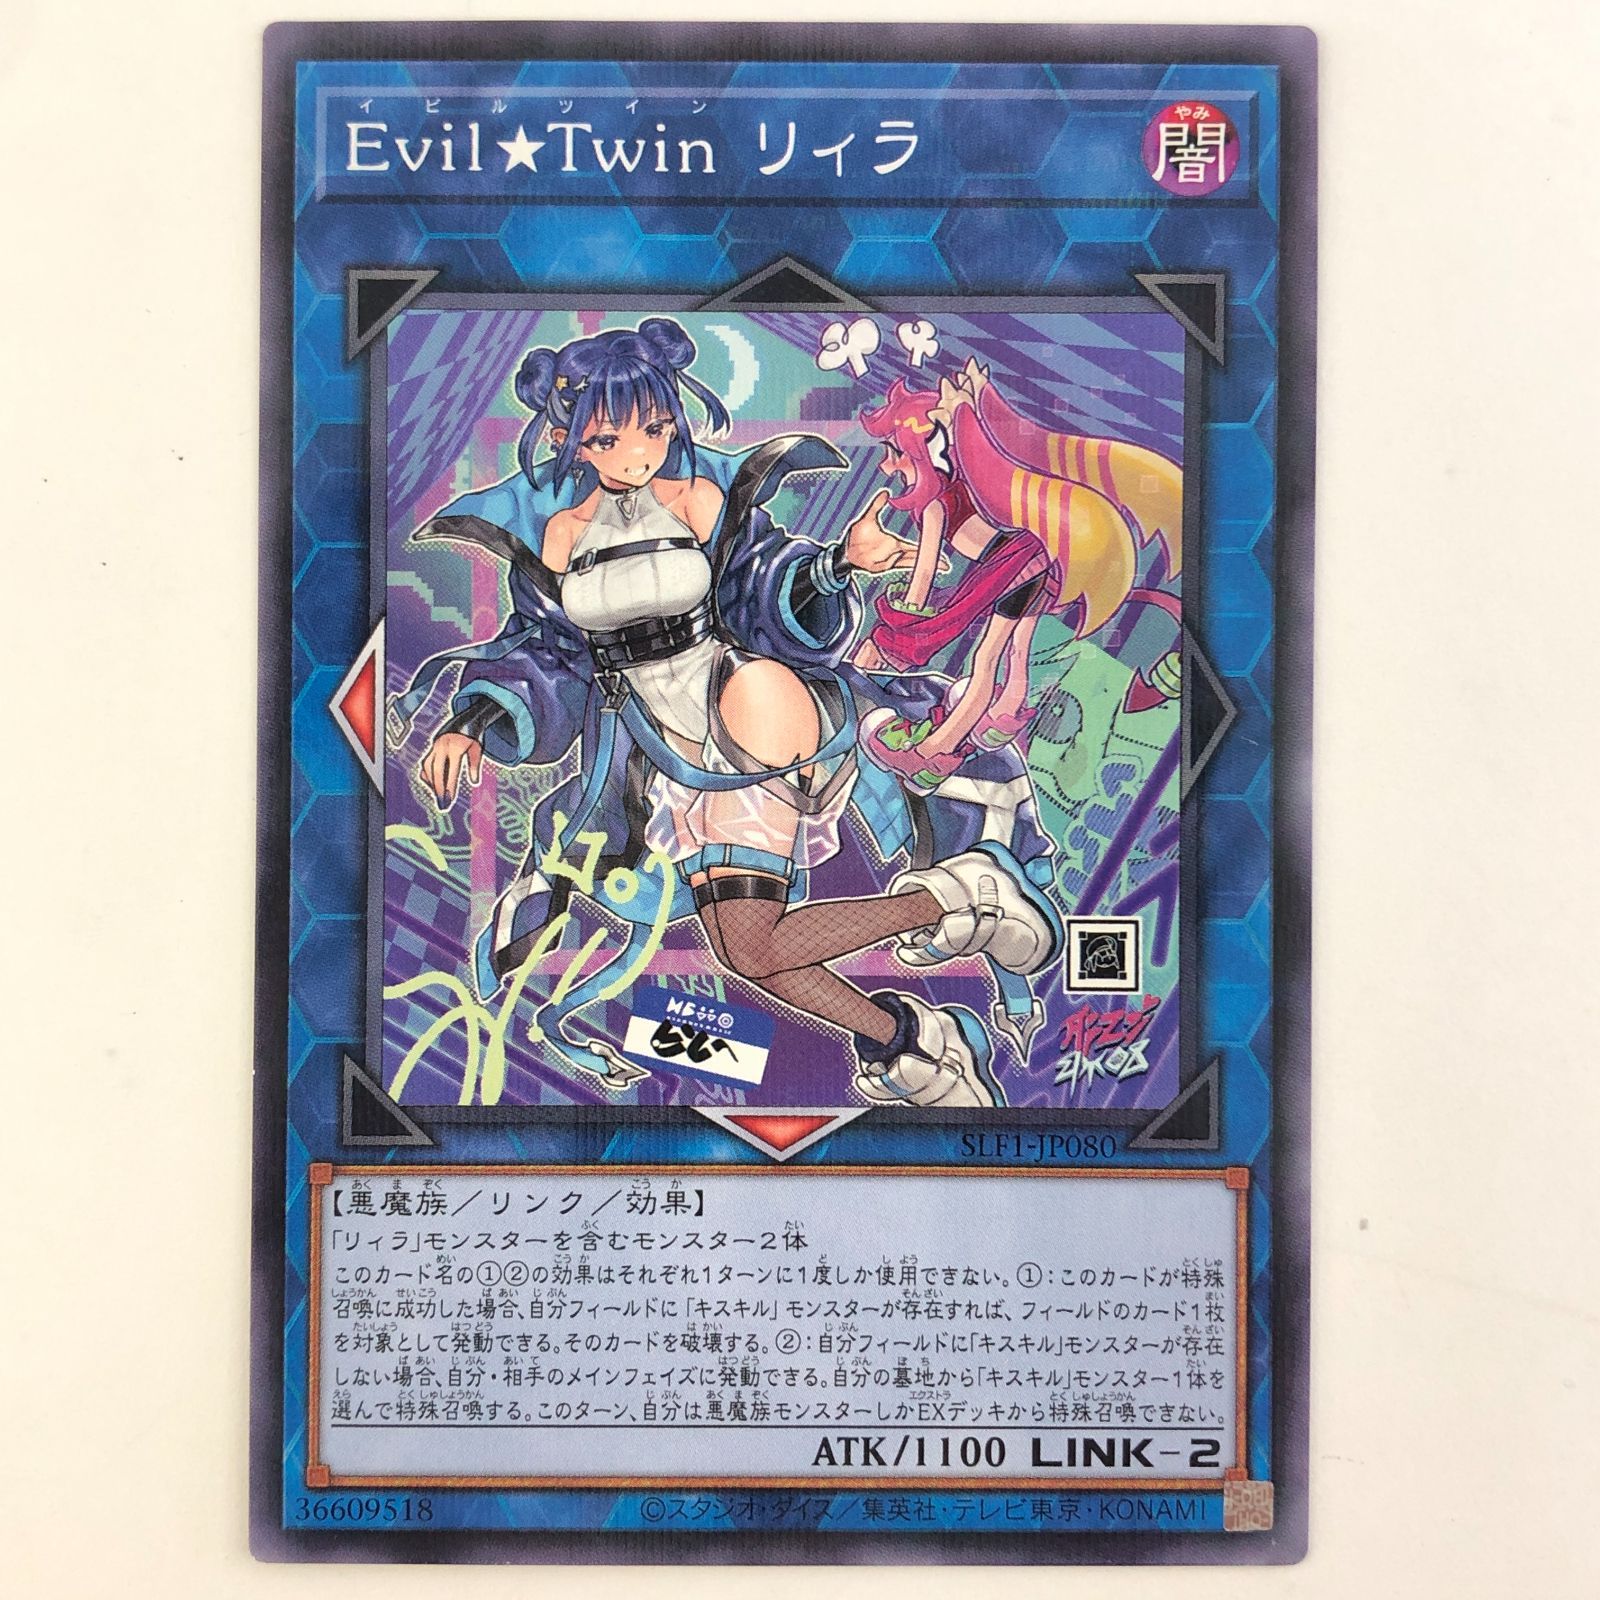 03m0278【２枚セット】遊戯王 Evil Twin キスキル/Evil Twin リィラ 絵 